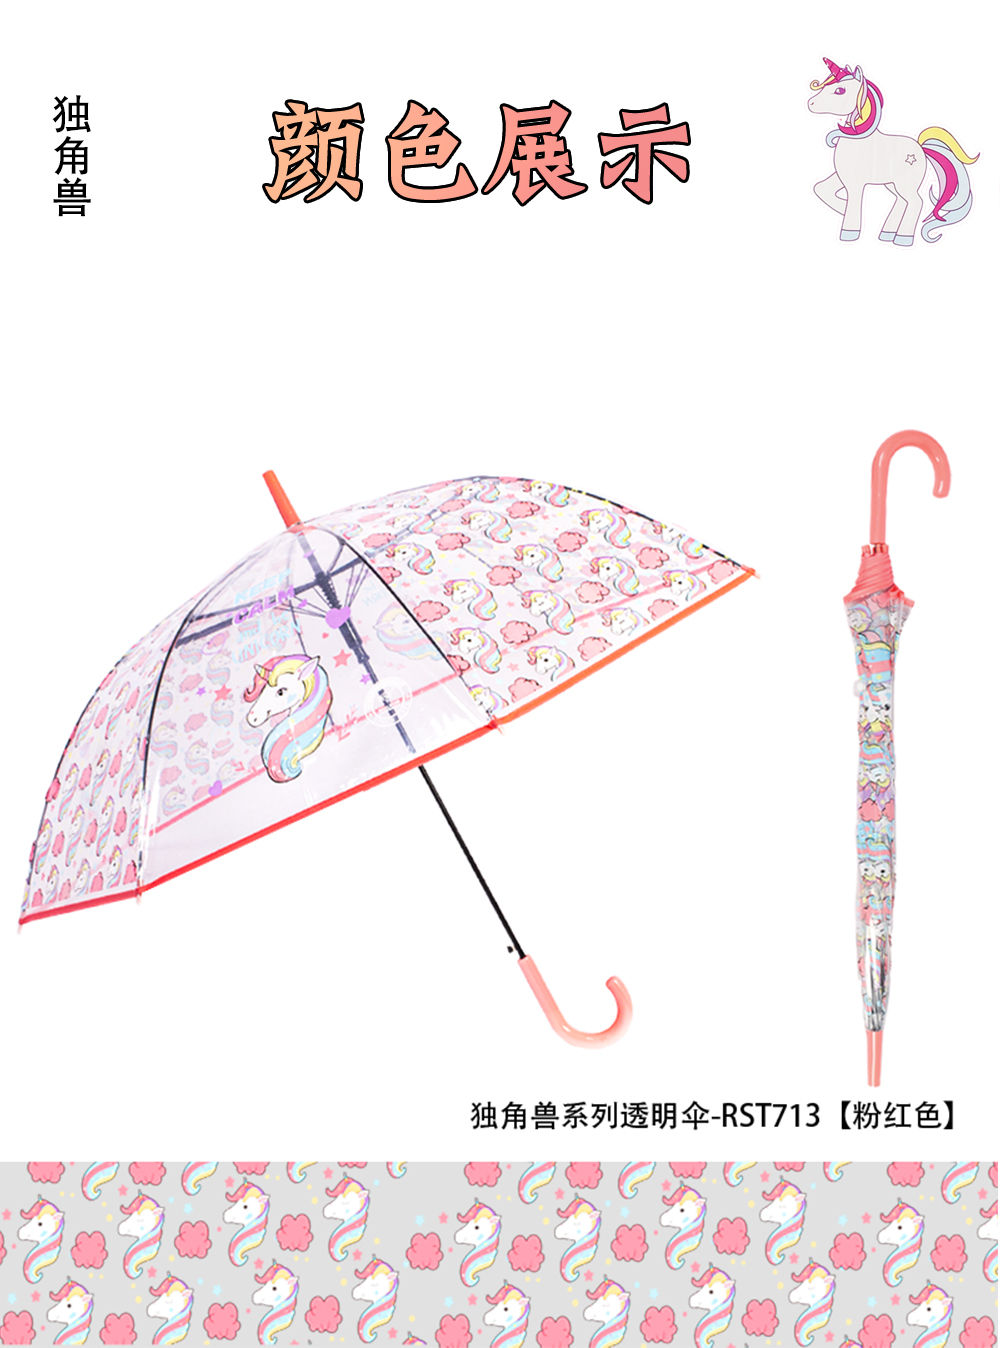 义乌好货雨伞RST713A独角兽雨伞长柄REALSTAR伞阿波罗拱形雨伞umbrella详情16